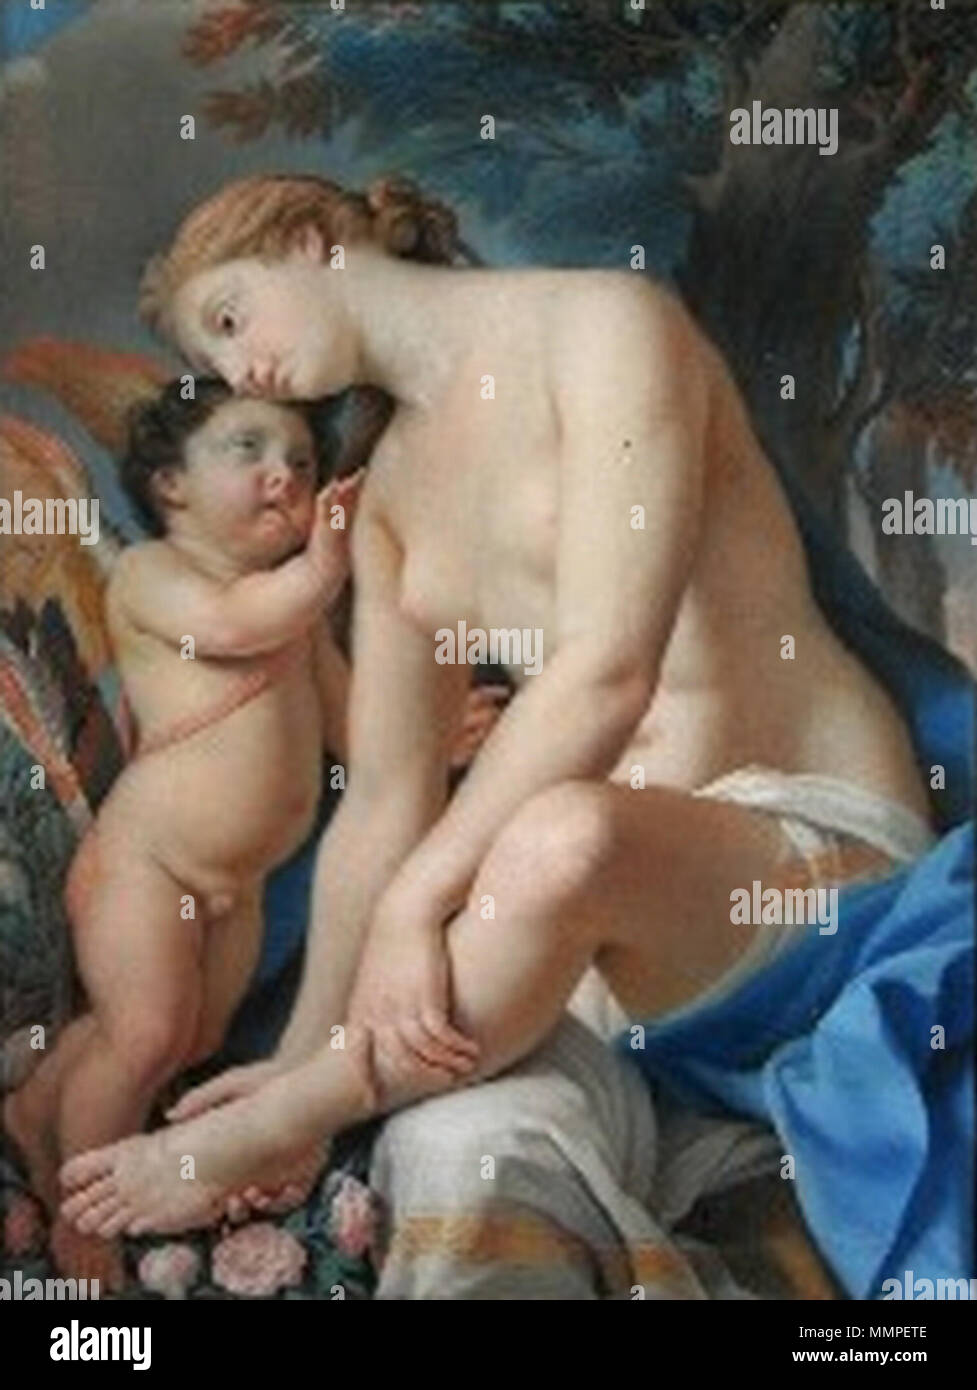 Amor tröstet die verwundete Venus - Francesco Pavona - Pastell - Wörlitz Stock Photo